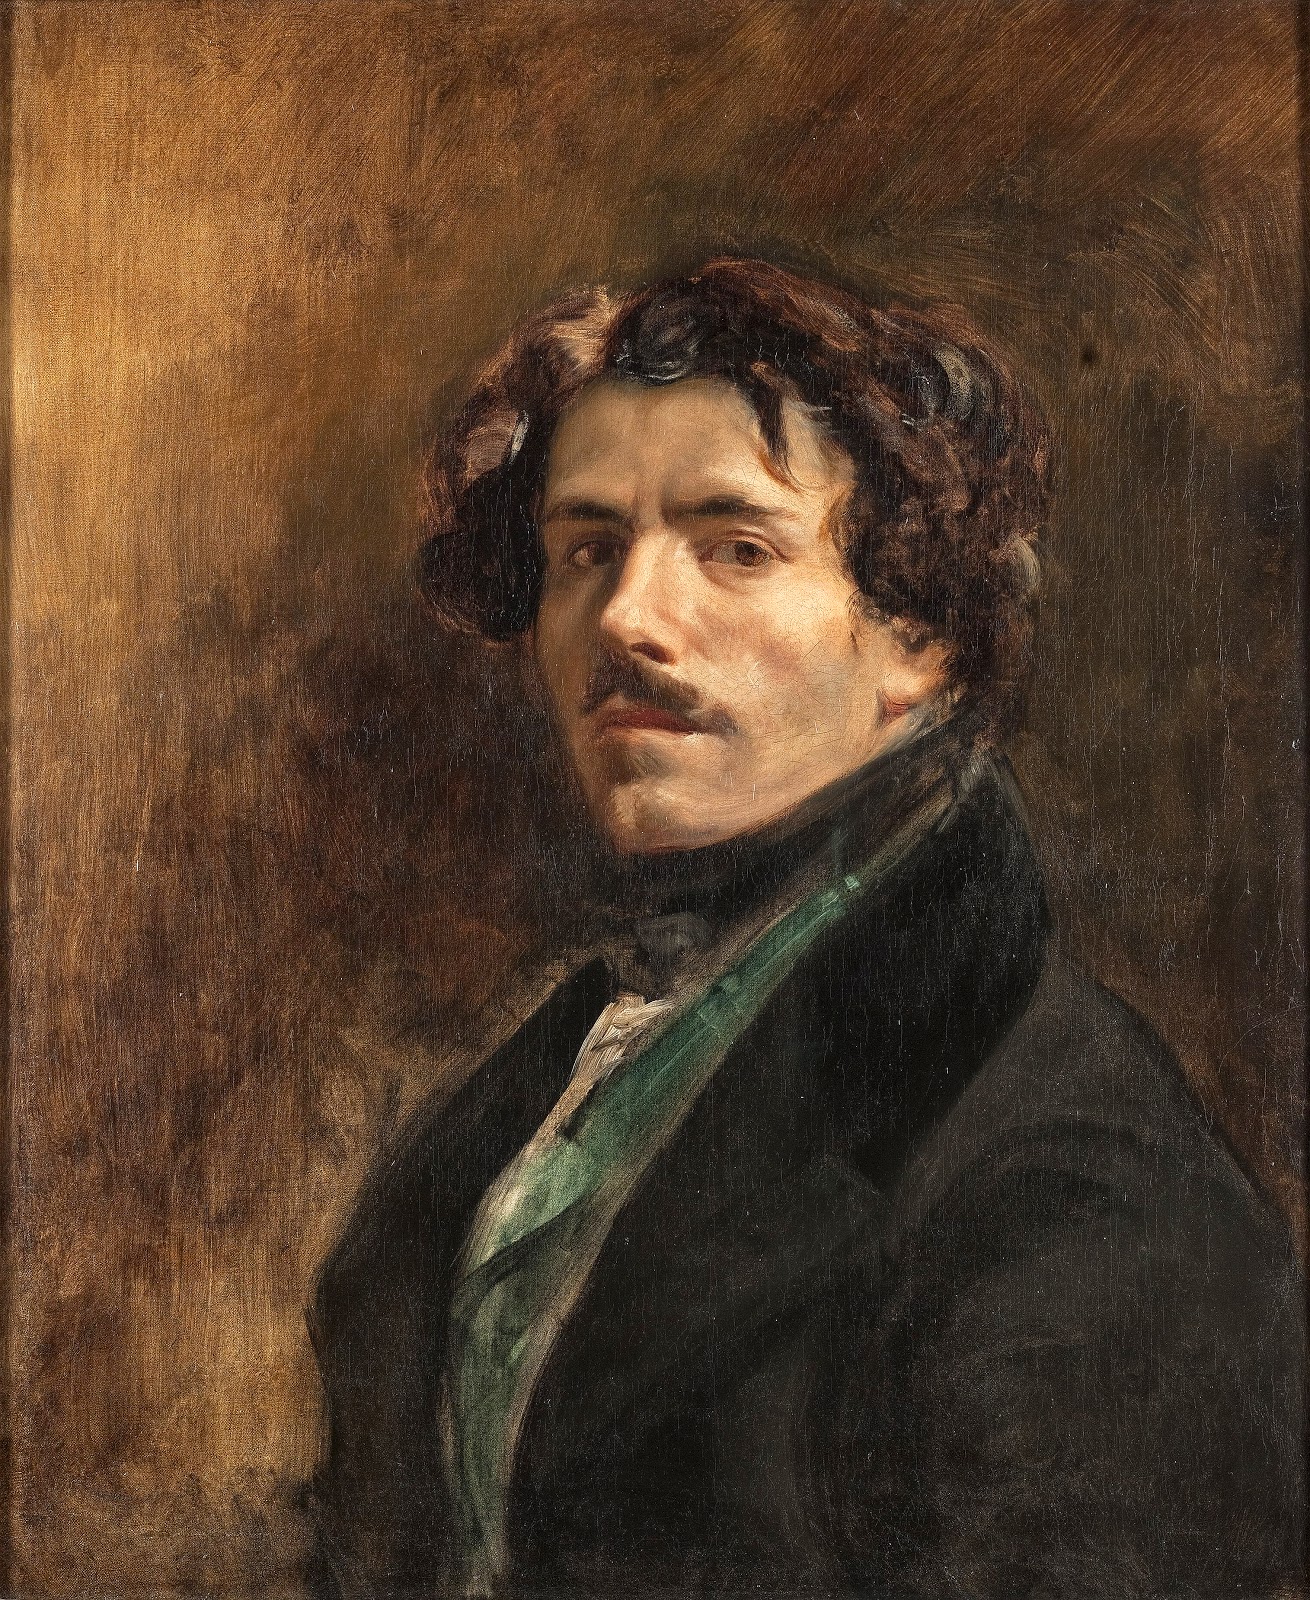 Eugene+Delacroix-1798-1863 (201).jpg